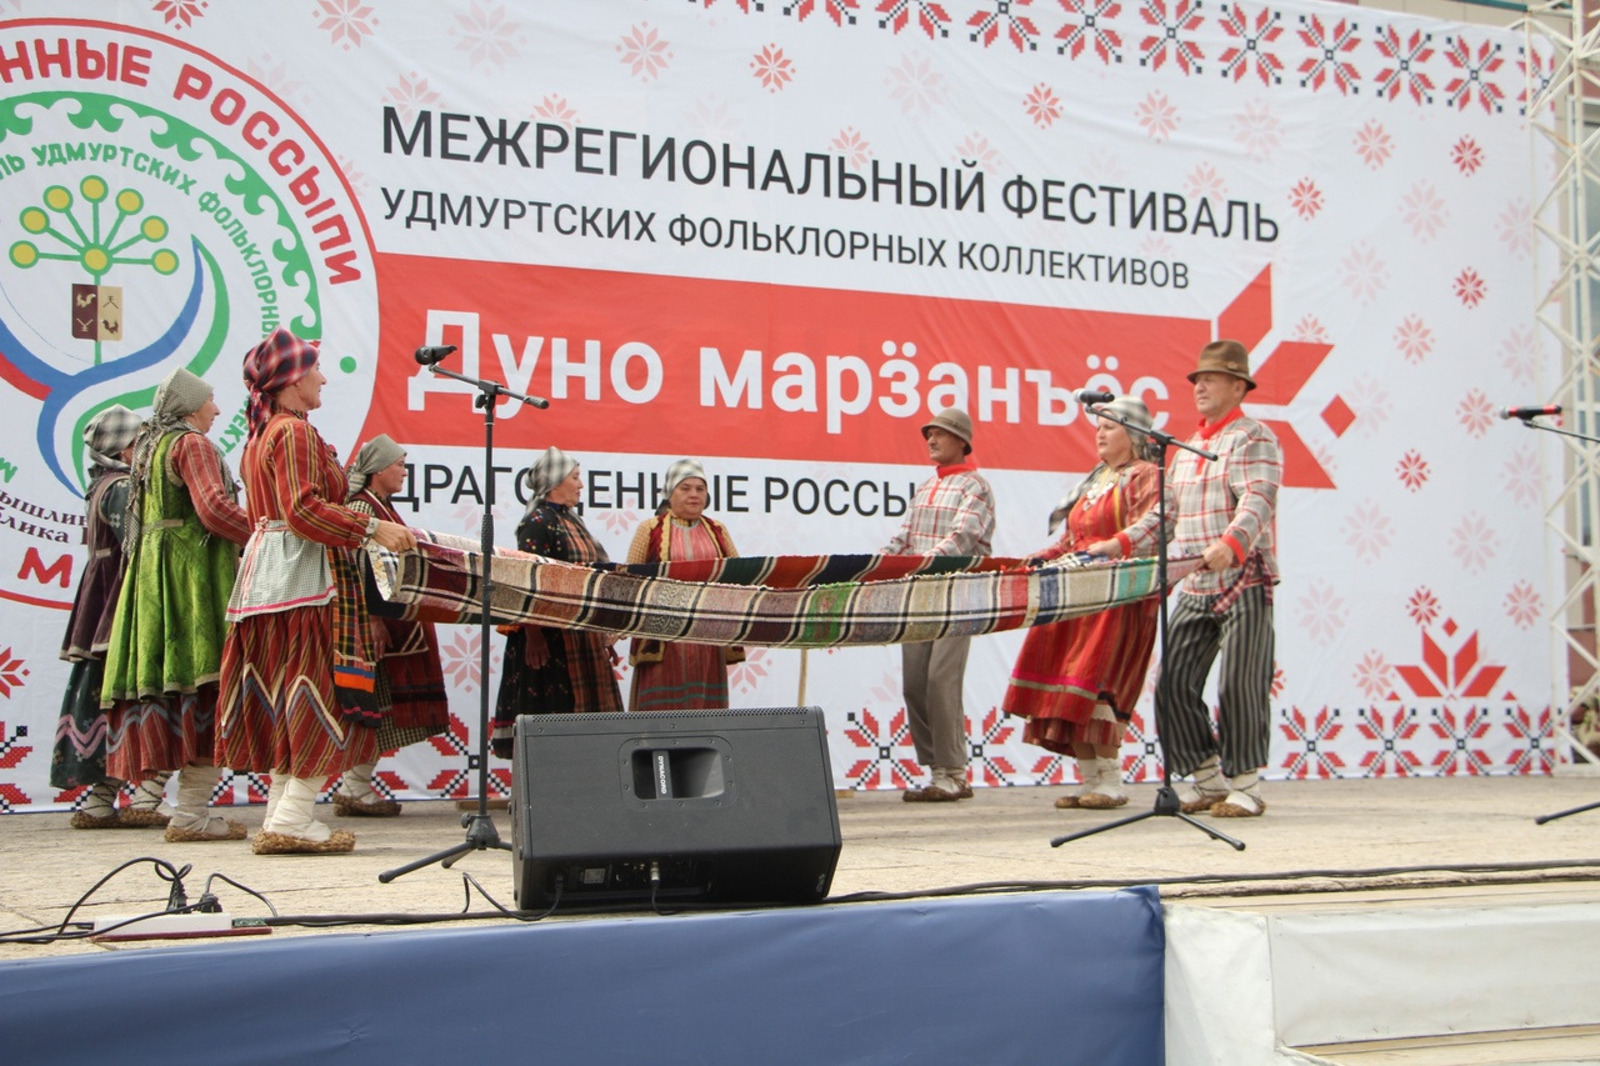 Башкортостан вновь собрал драгоценные россыпи удмуртского фольклора